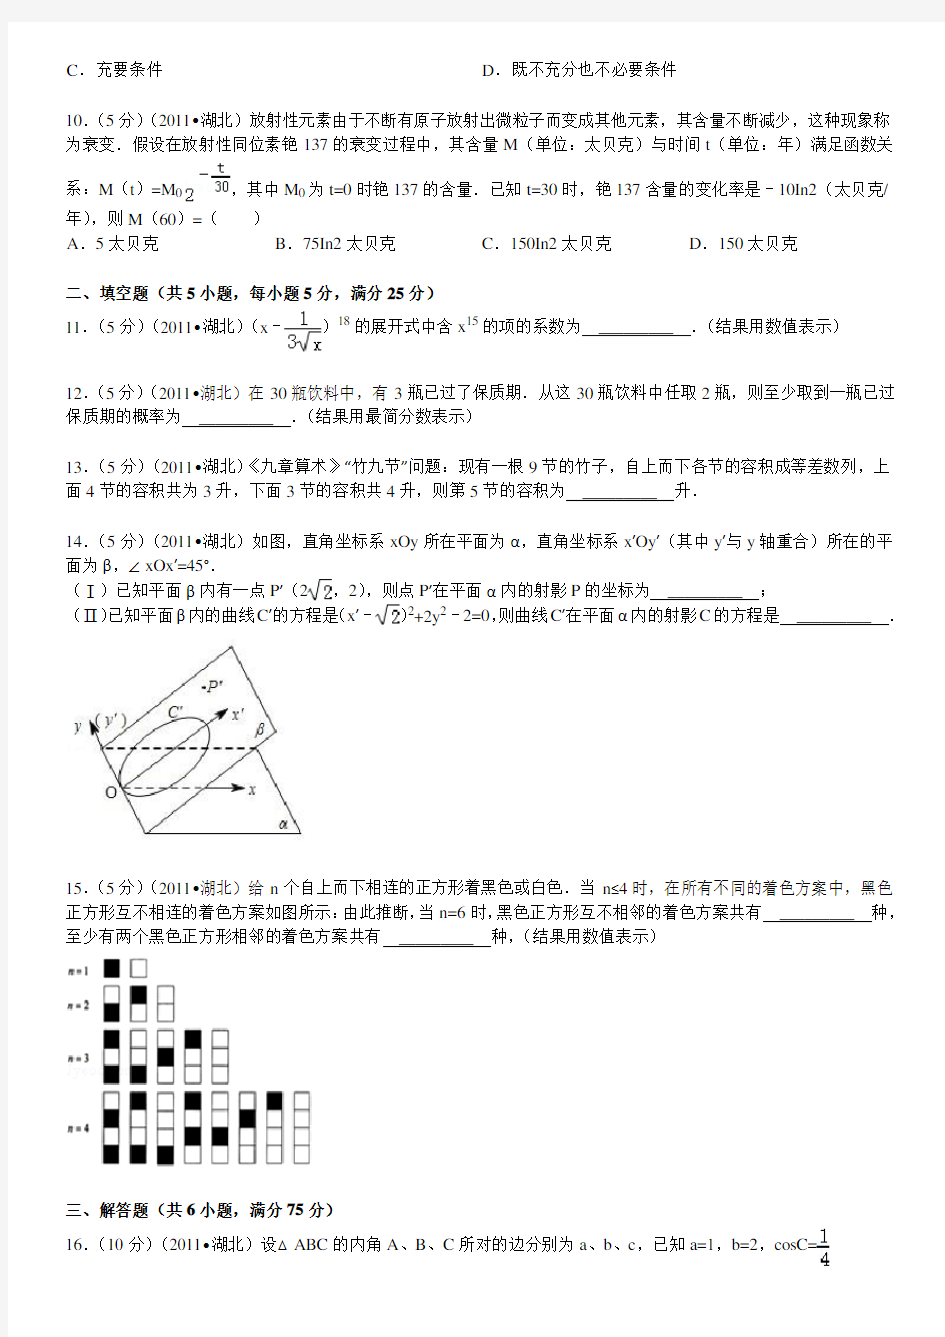 2011年湖北省高考数学试卷(理科)答案及解析